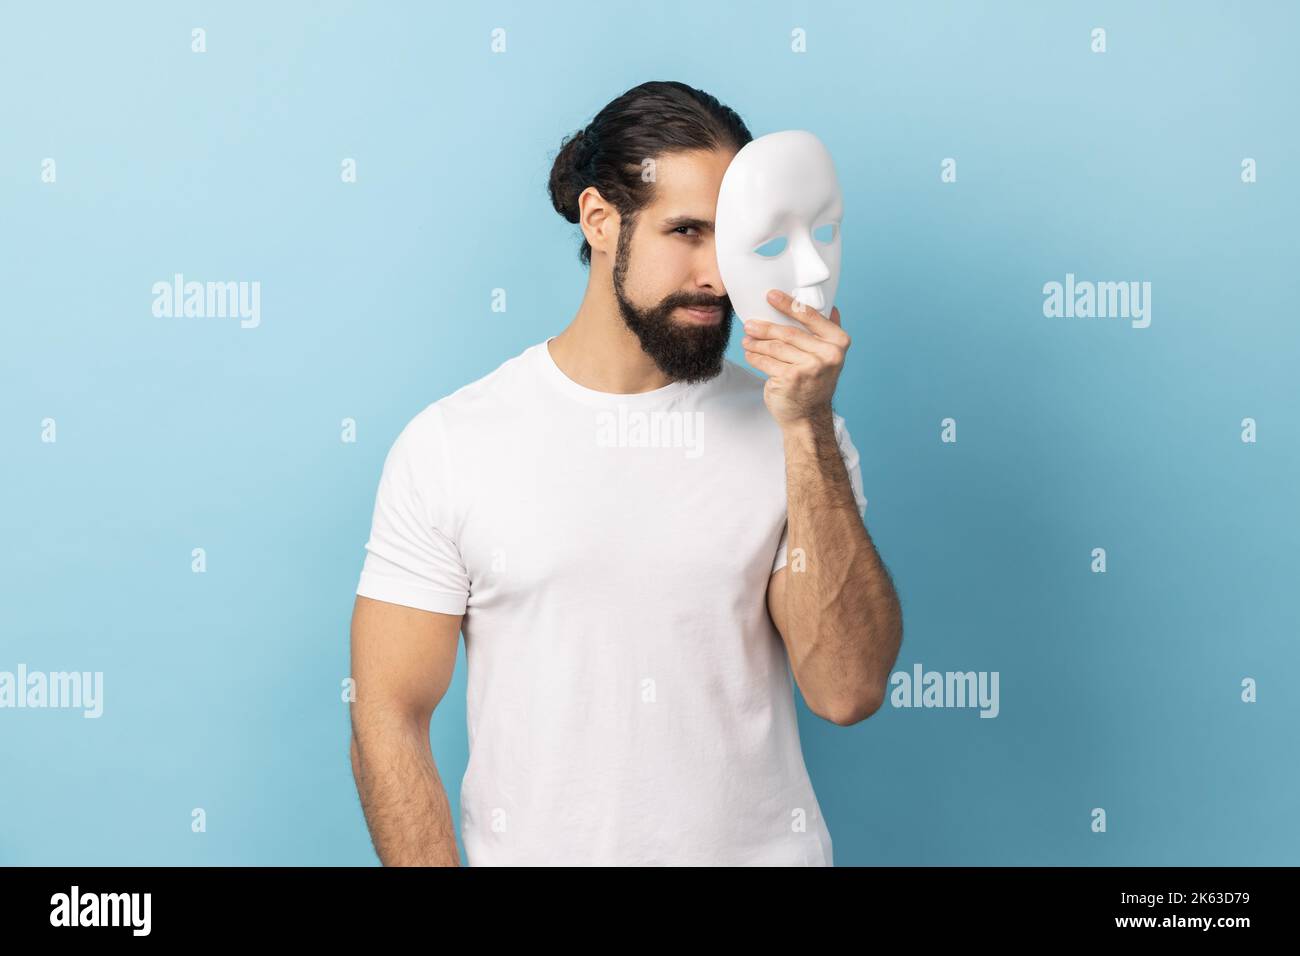 Portrait eines Bodybuilders mit Bart, das weißes T-Shirt trägt und weiße Maske hält, guckt, die Kamera anschaut und vorgibt, eine andere Person zu sein. Innenaufnahme des Studios isoliert auf blauem Hintergrund. Stockfoto